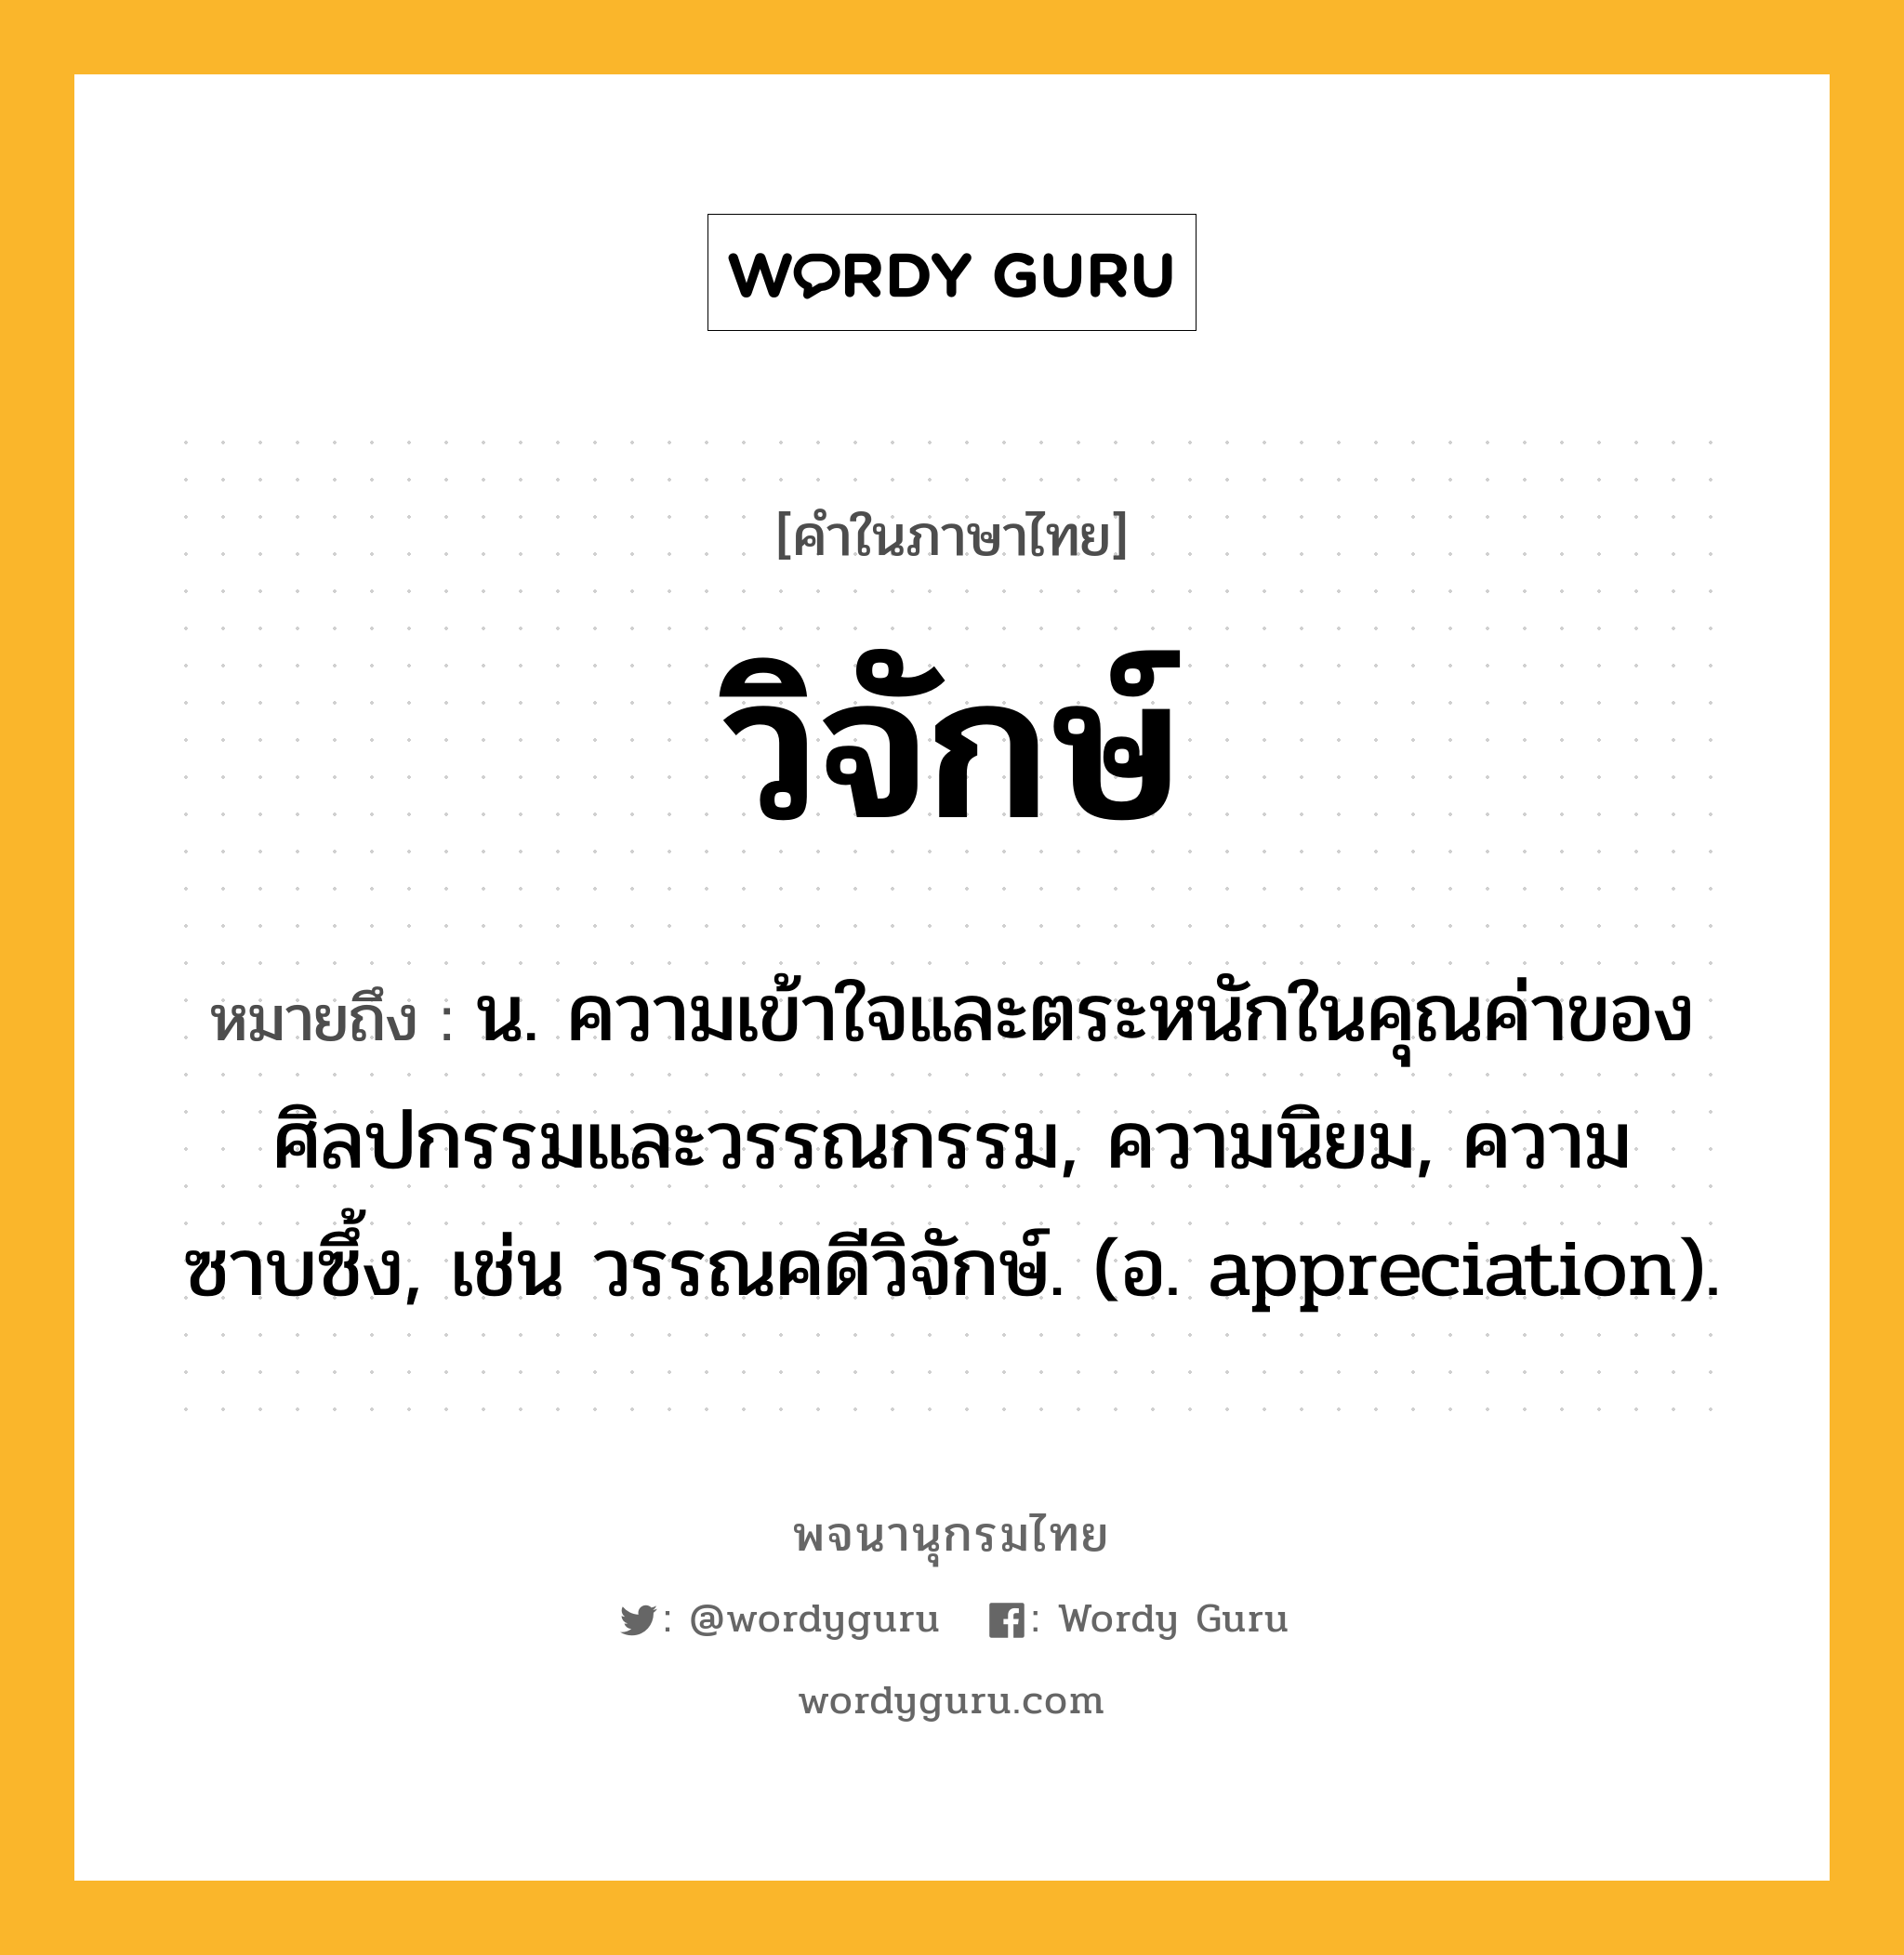 วิจักษ์ หมายถึงอะไร?, คำในภาษาไทย วิจักษ์ หมายถึง น. ความเข้าใจและตระหนักในคุณค่าของศิลปกรรมและวรรณกรรม, ความนิยม, ความซาบซึ้ง, เช่น วรรณคดีวิจักษ์. (อ. appreciation).